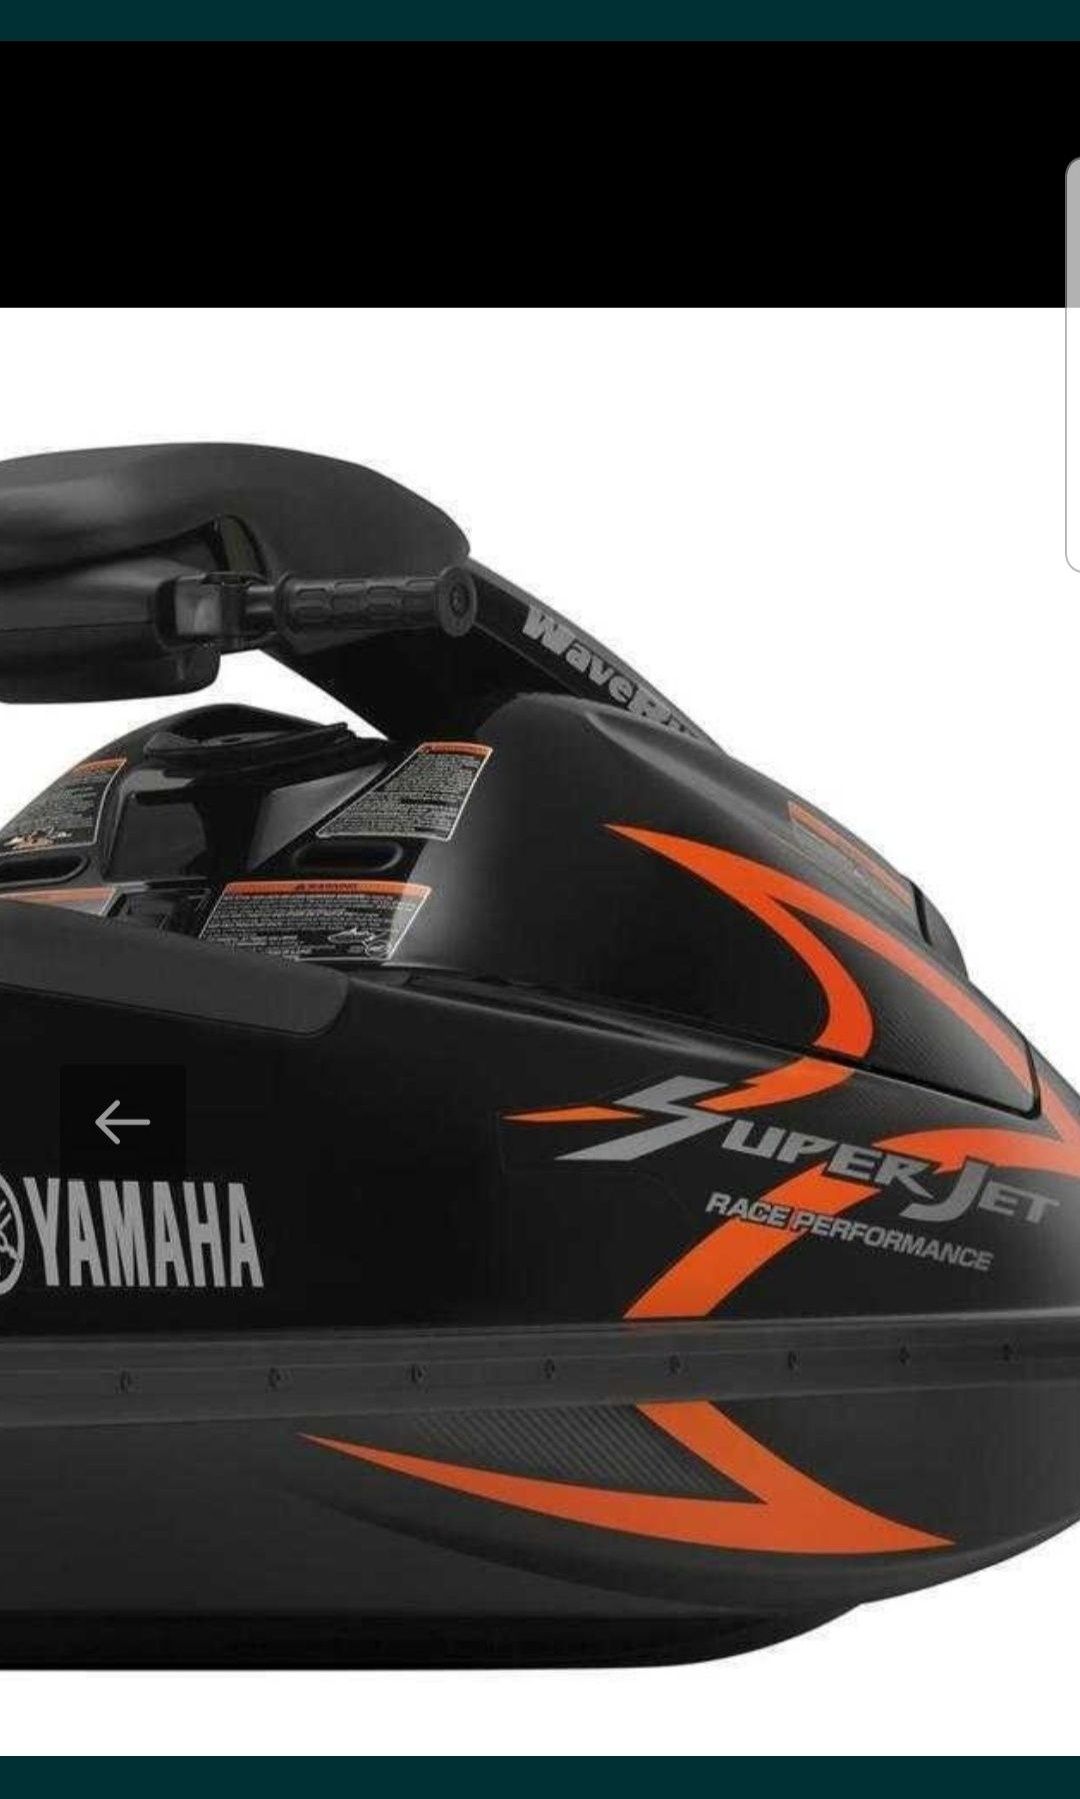 Nowe naklejki skuter wodny Yamaha Superjet 2014 super jakość jet